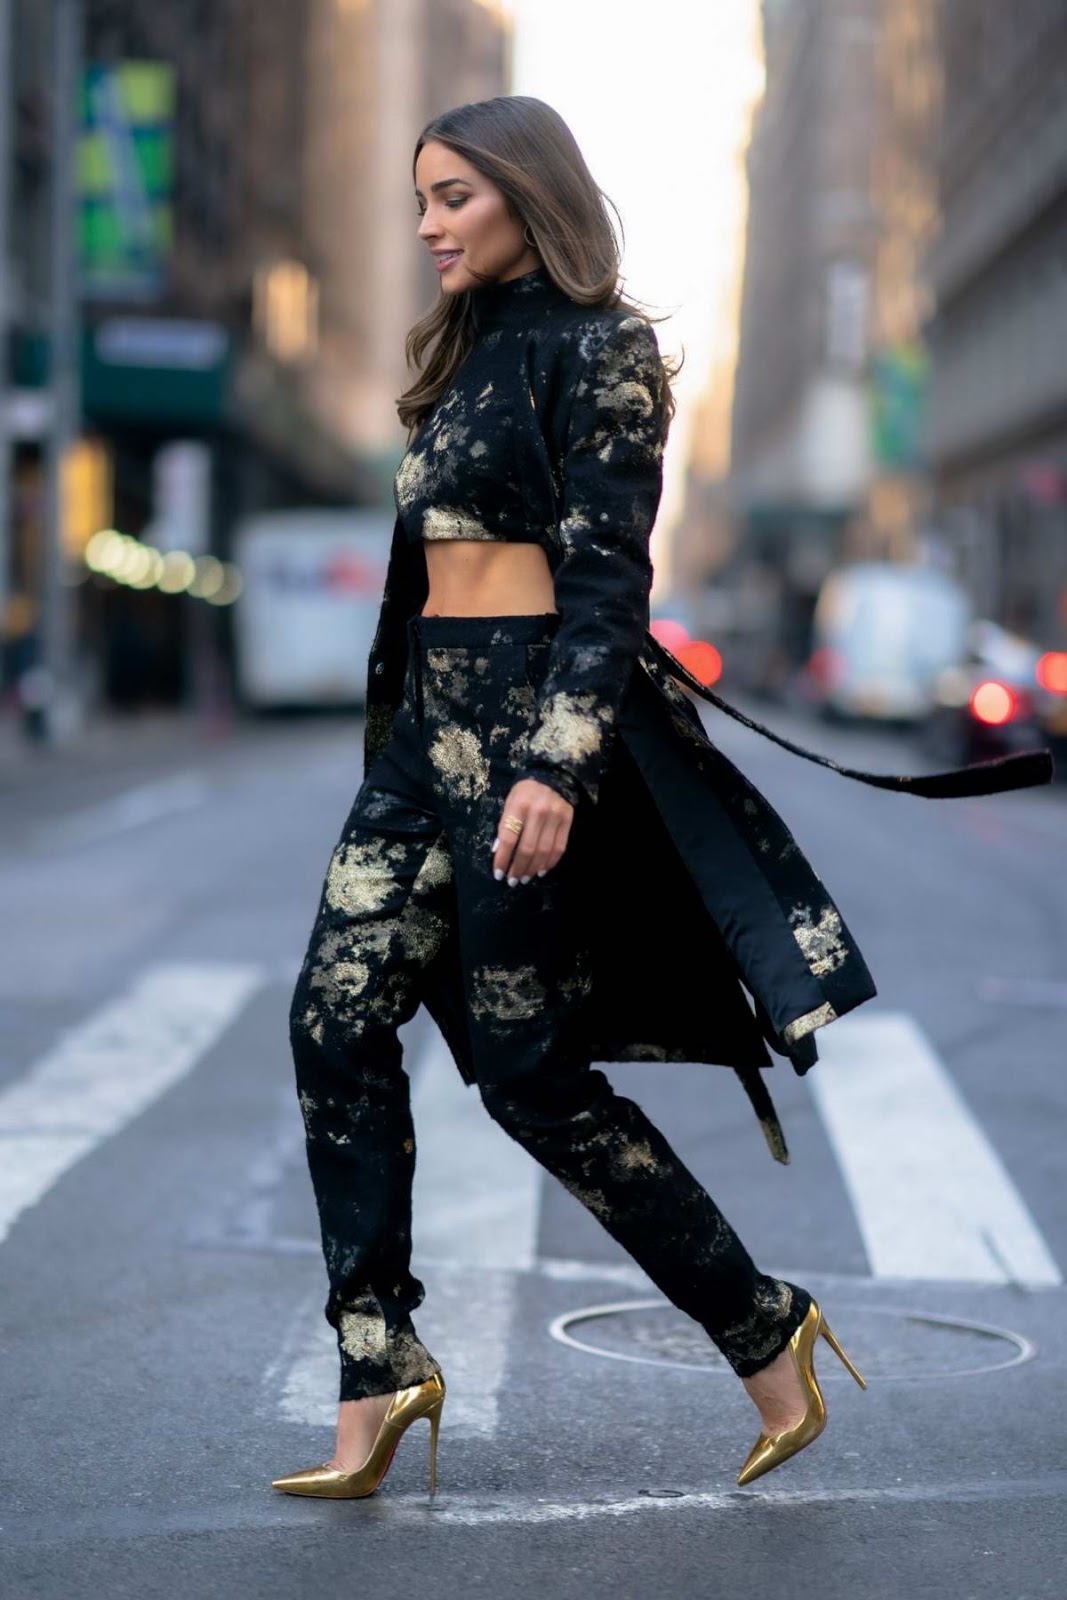 Olivia Culpo - high street fashion style latest photo